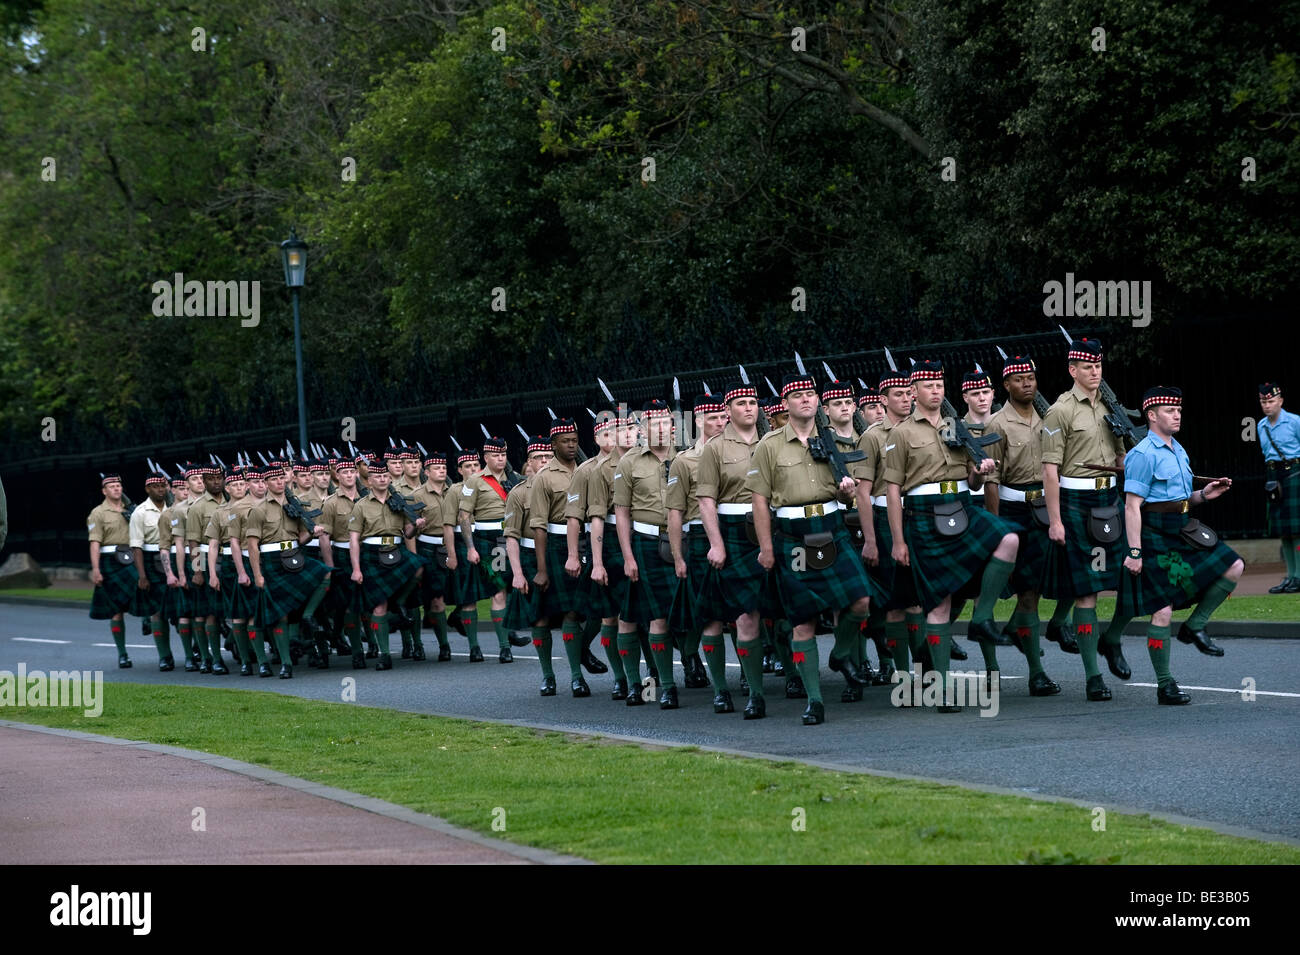 Régiment des gardes écossais, Edimbourg, Ecosse, Royaume-Uni, Europe Banque D'Images